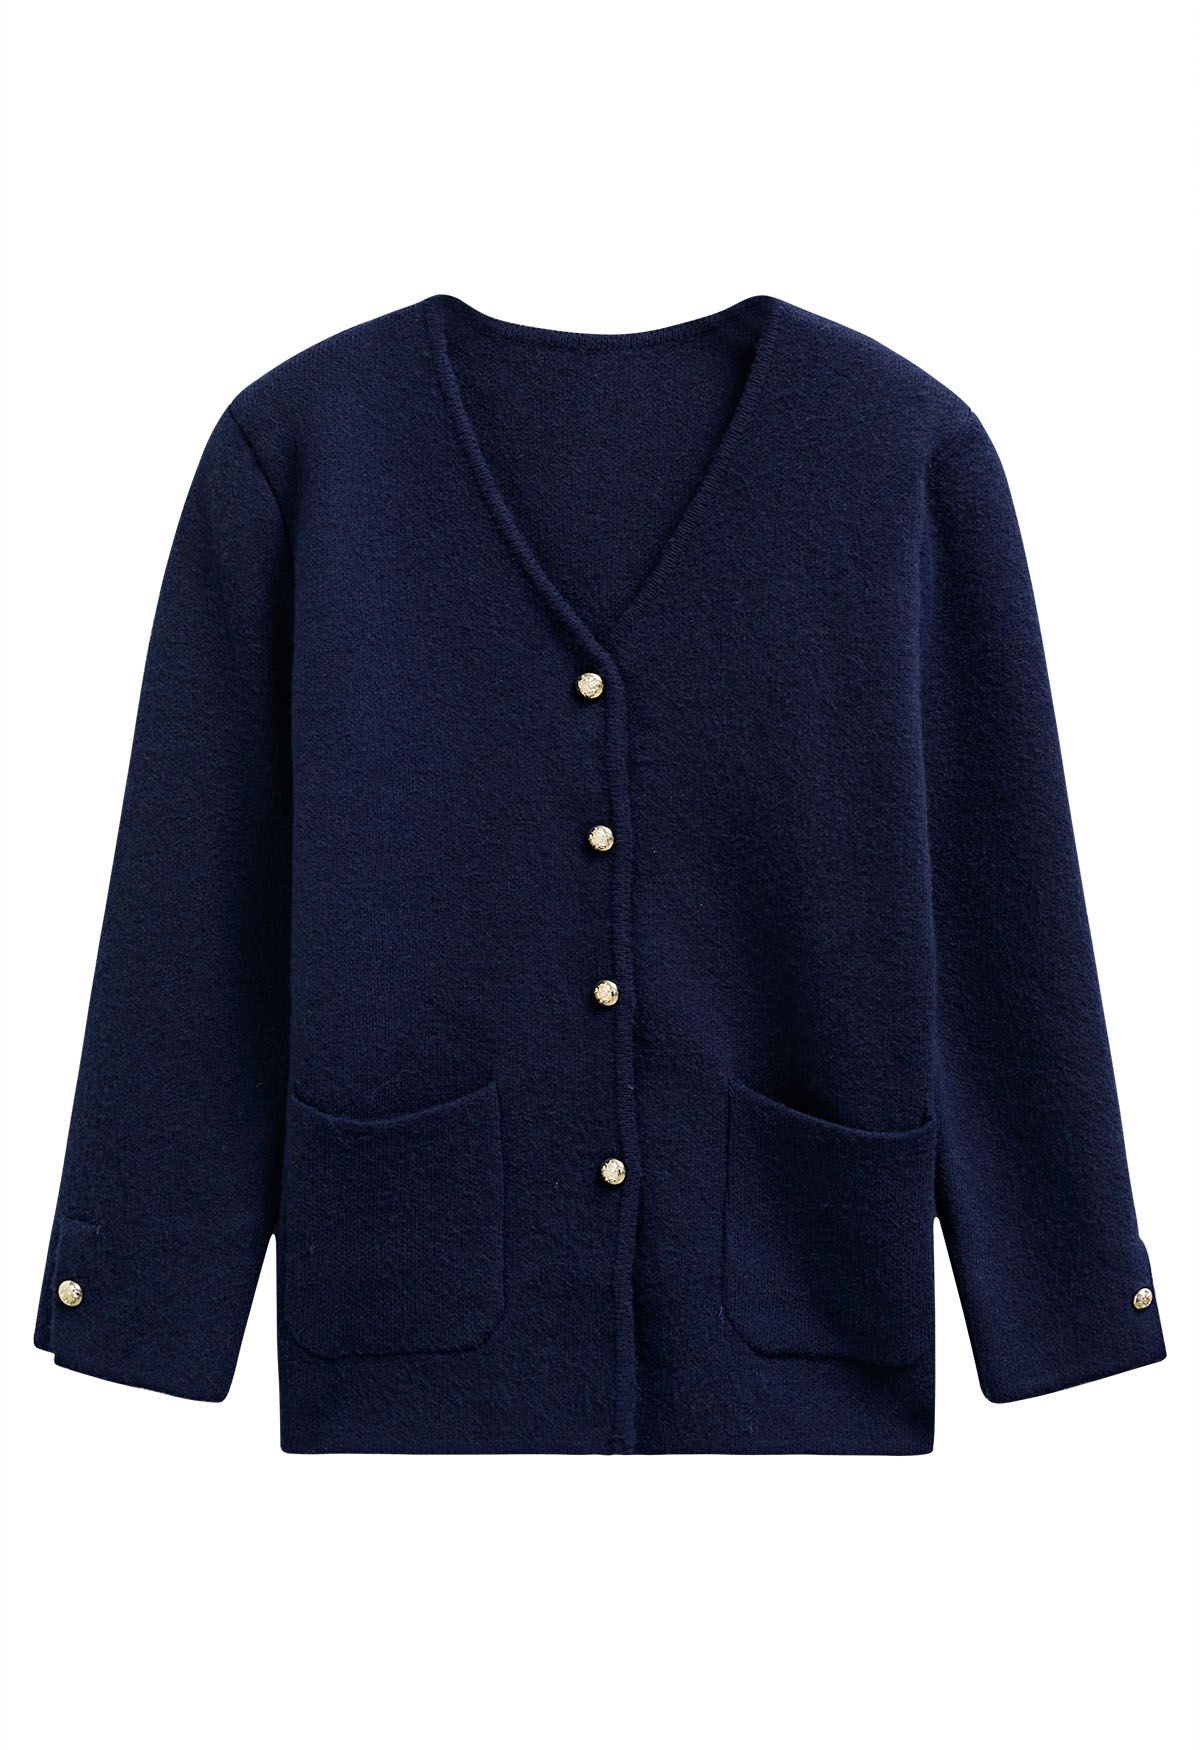 Kragenloser Mantel mit aufgesetzten Taschen und V-Ausschnitt in Marineblau